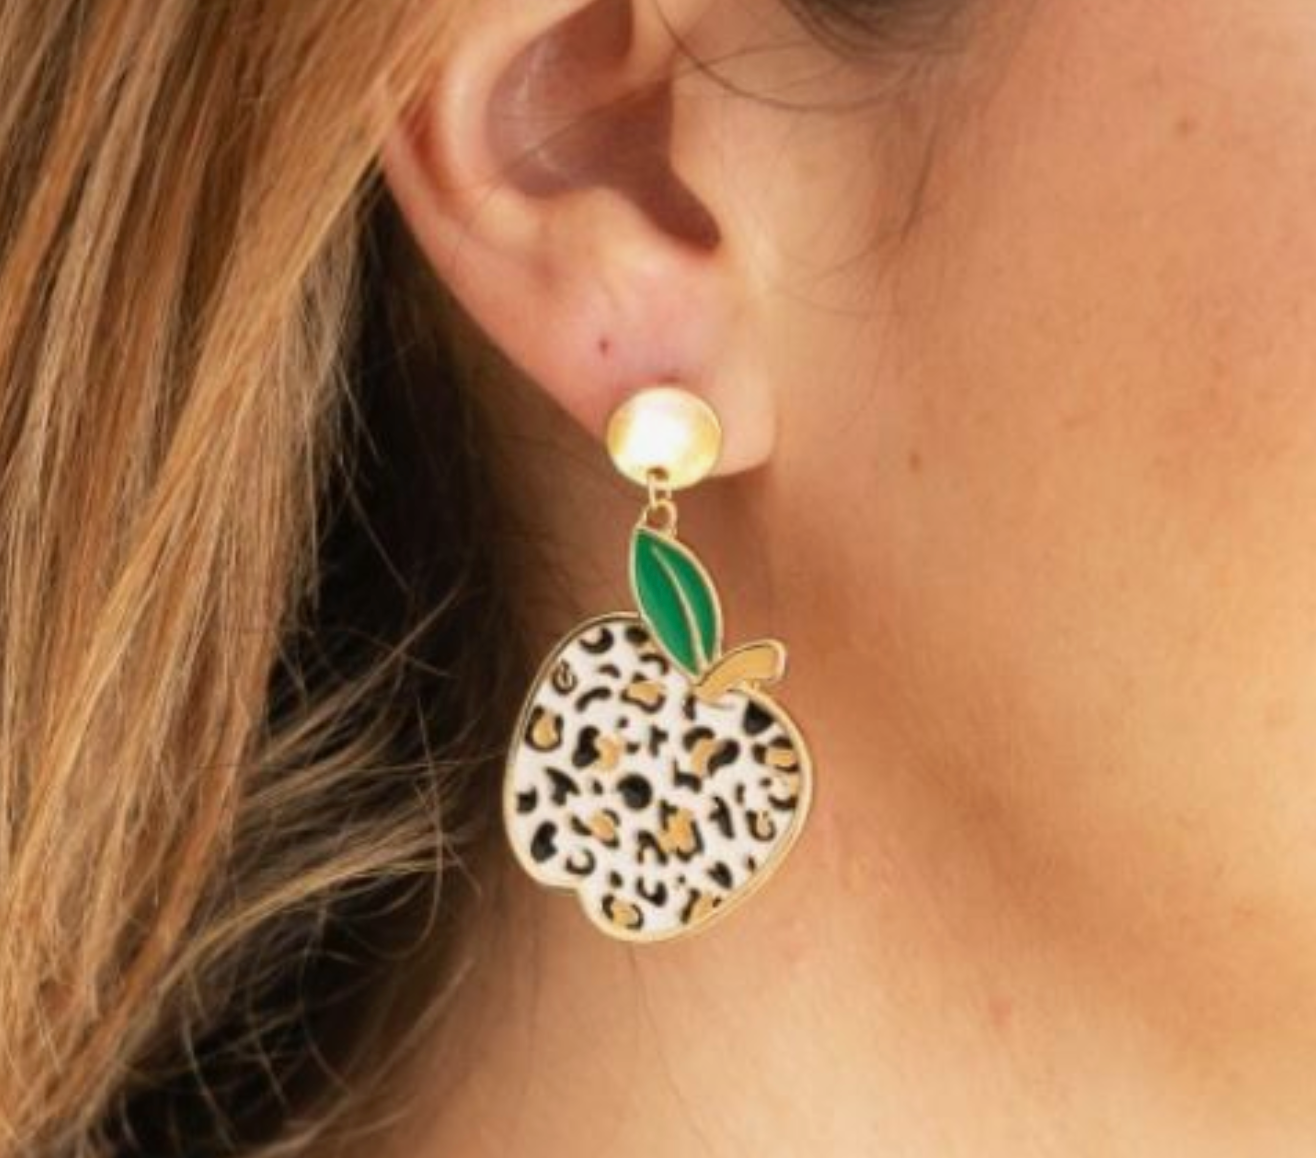 Leopard Apple Enamel Earrings